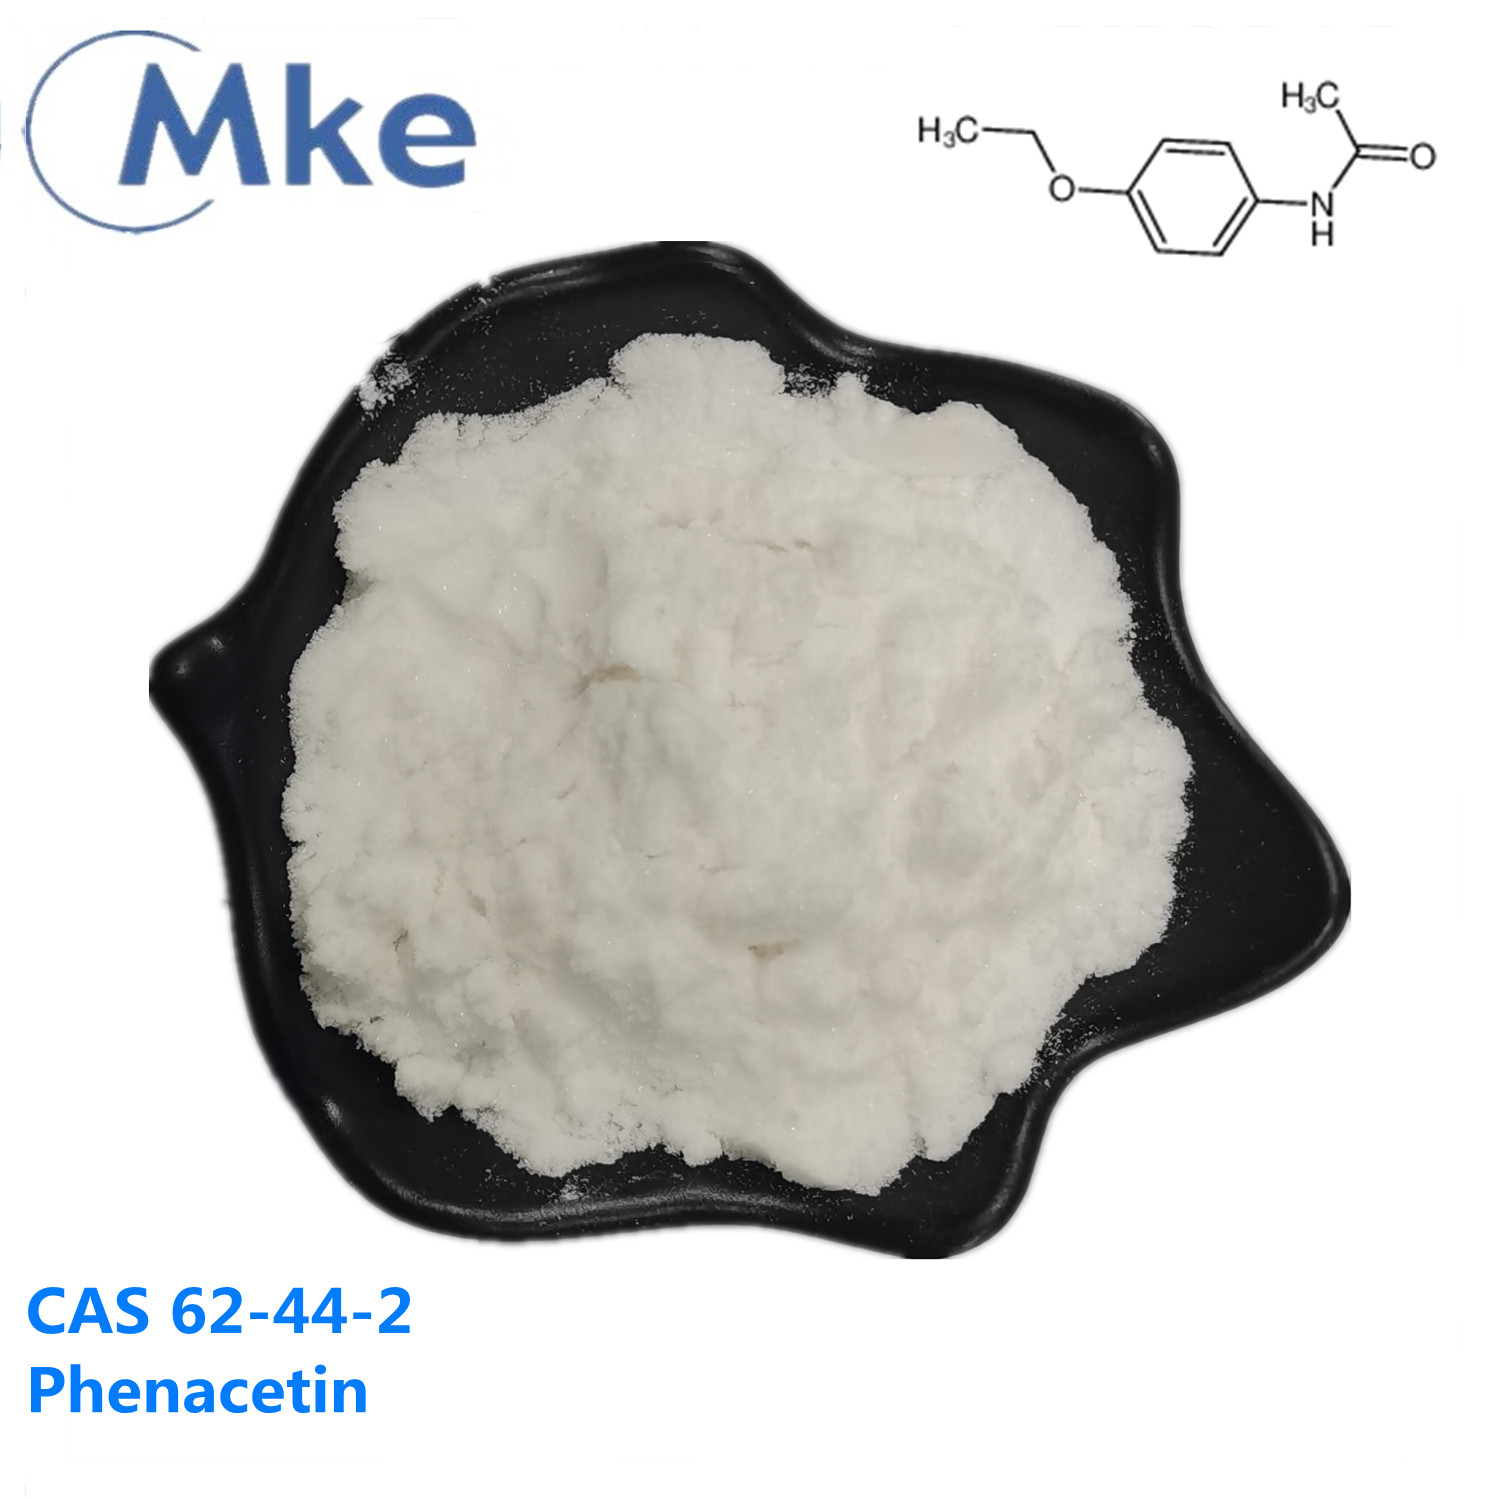 Glänzendes kristallines Phenacetin-Pulver ca. 62-44-2 mit sicherer Lieferung